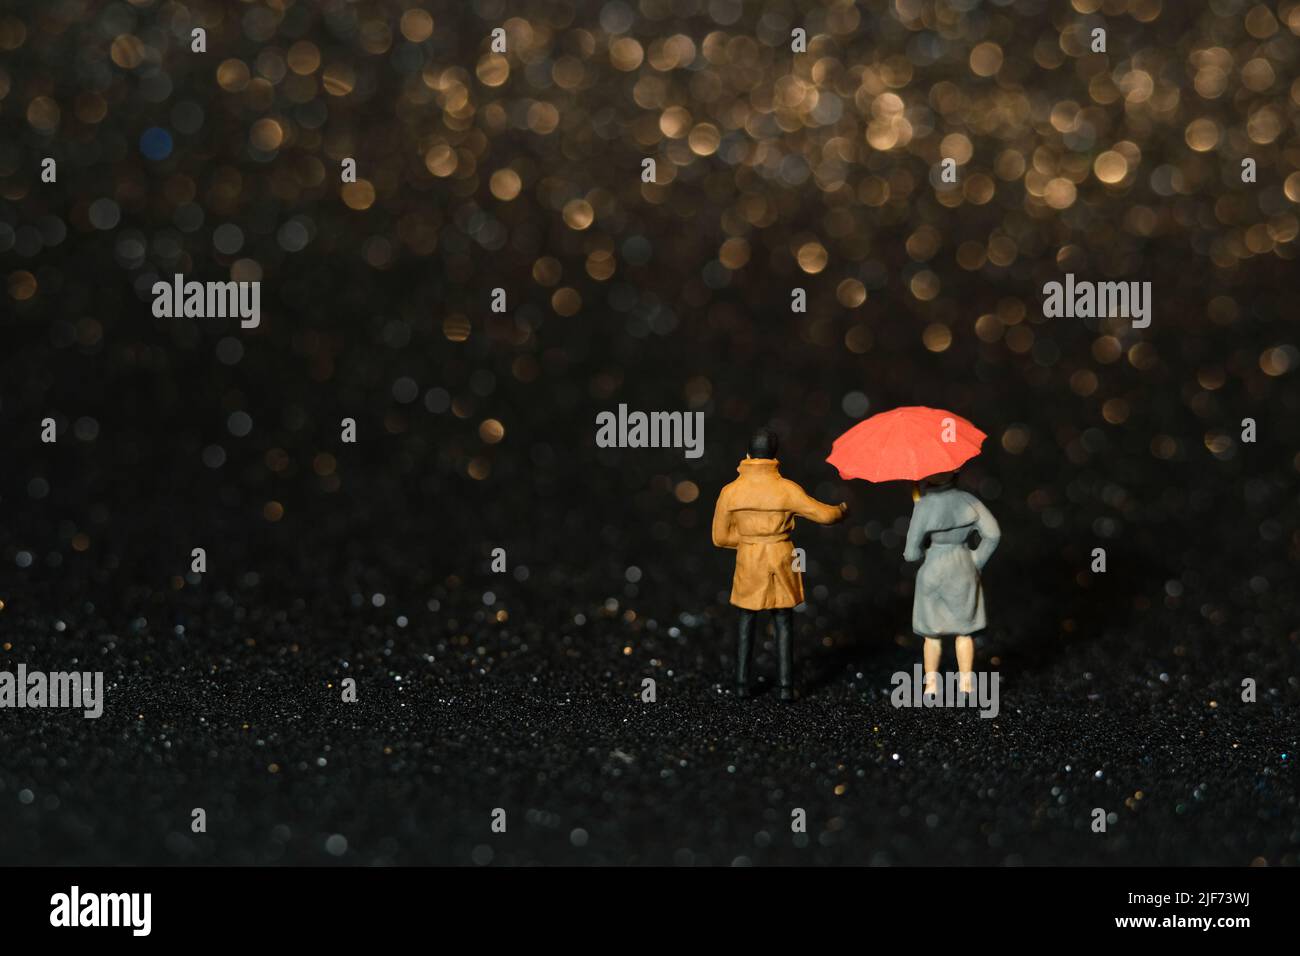 Miniatur Menschen Spielzeug Figur Fotografie. Ein Paar, das am regnerischen Tag mit einem Regenschirm in der Nacht datierte. Schöne goldgelbe Bokeh Stadt Licht Hintergrund. Ima Stockfoto